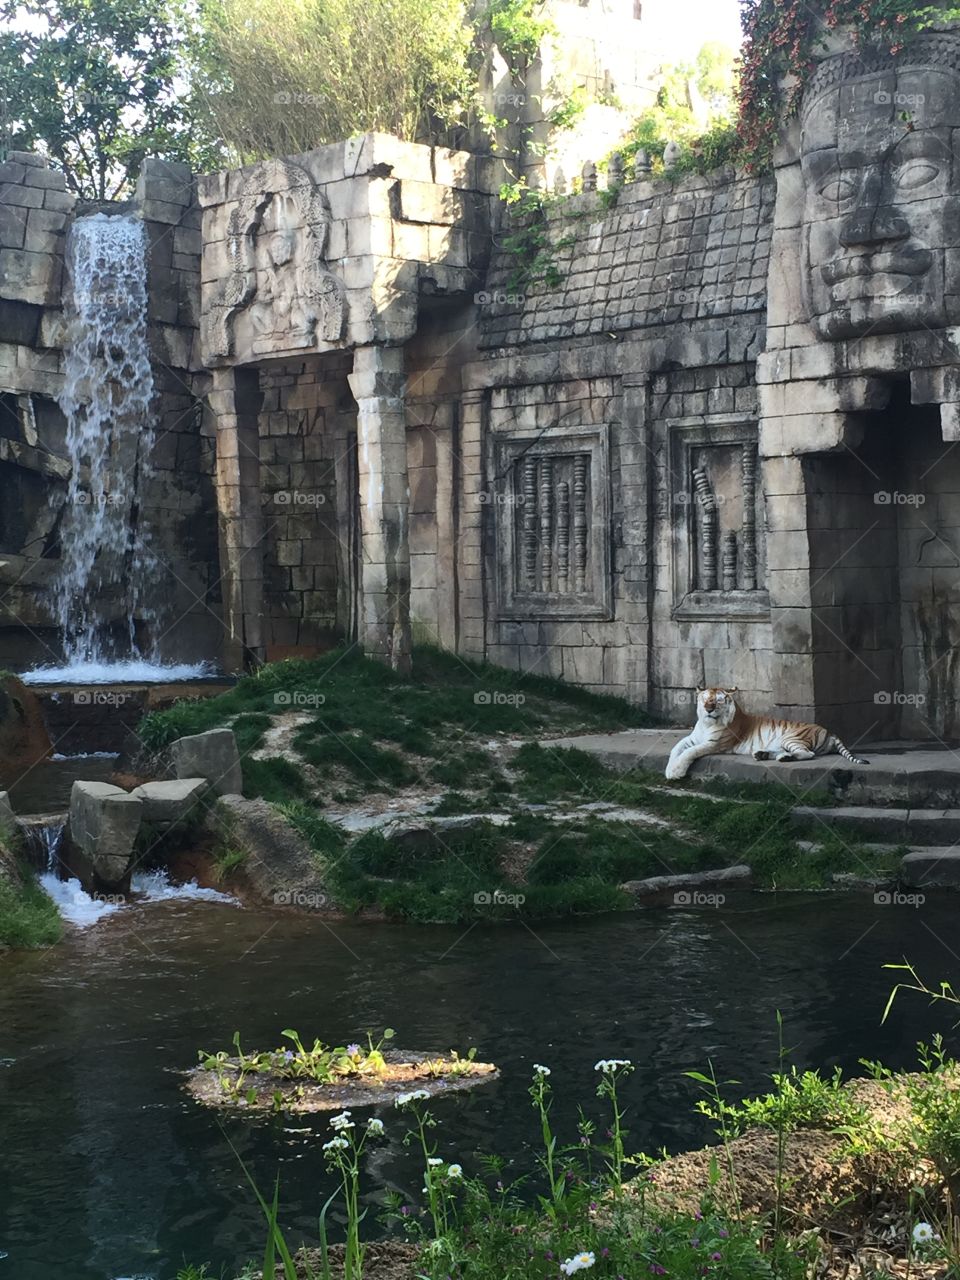 Tiger at the Memphis Zoo